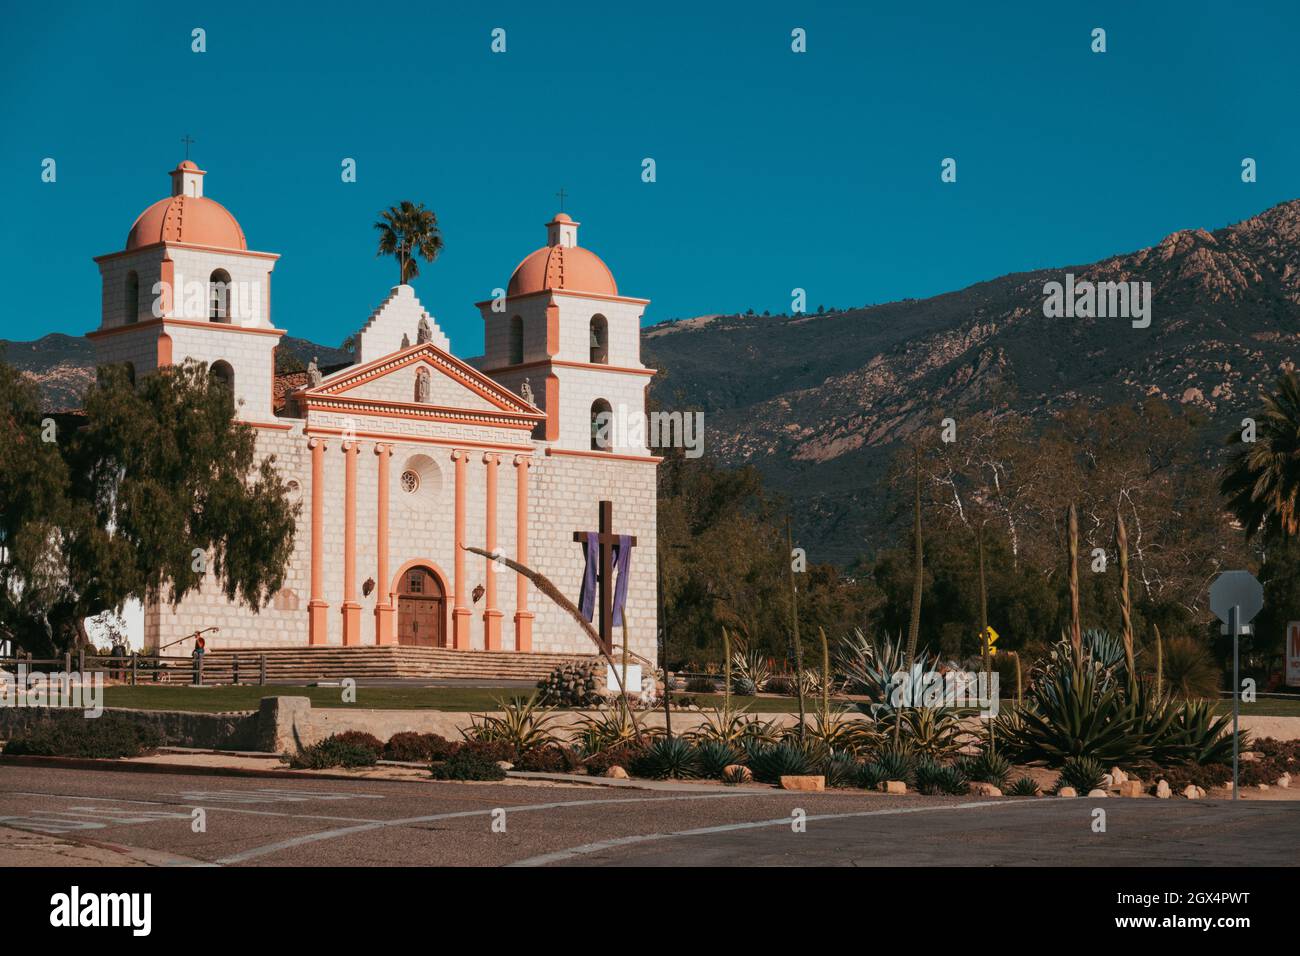 La vieille Mission Santa Barbara, Californie.Fondée en 1786 par les Espagnols pour la conversion religieuse des peuples autochtones au catholicisme Banque D'Images